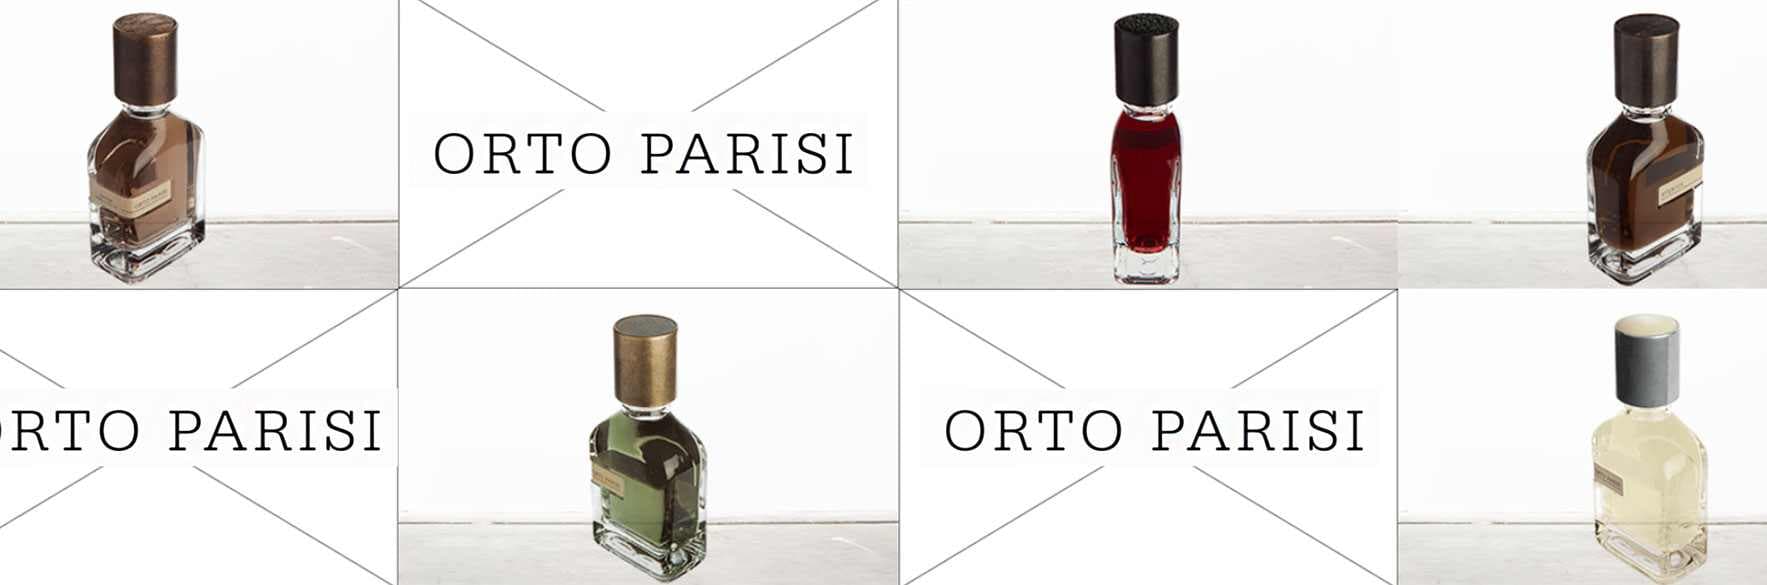 اورتو پاریسی | محصولات برند ORTO PARISI